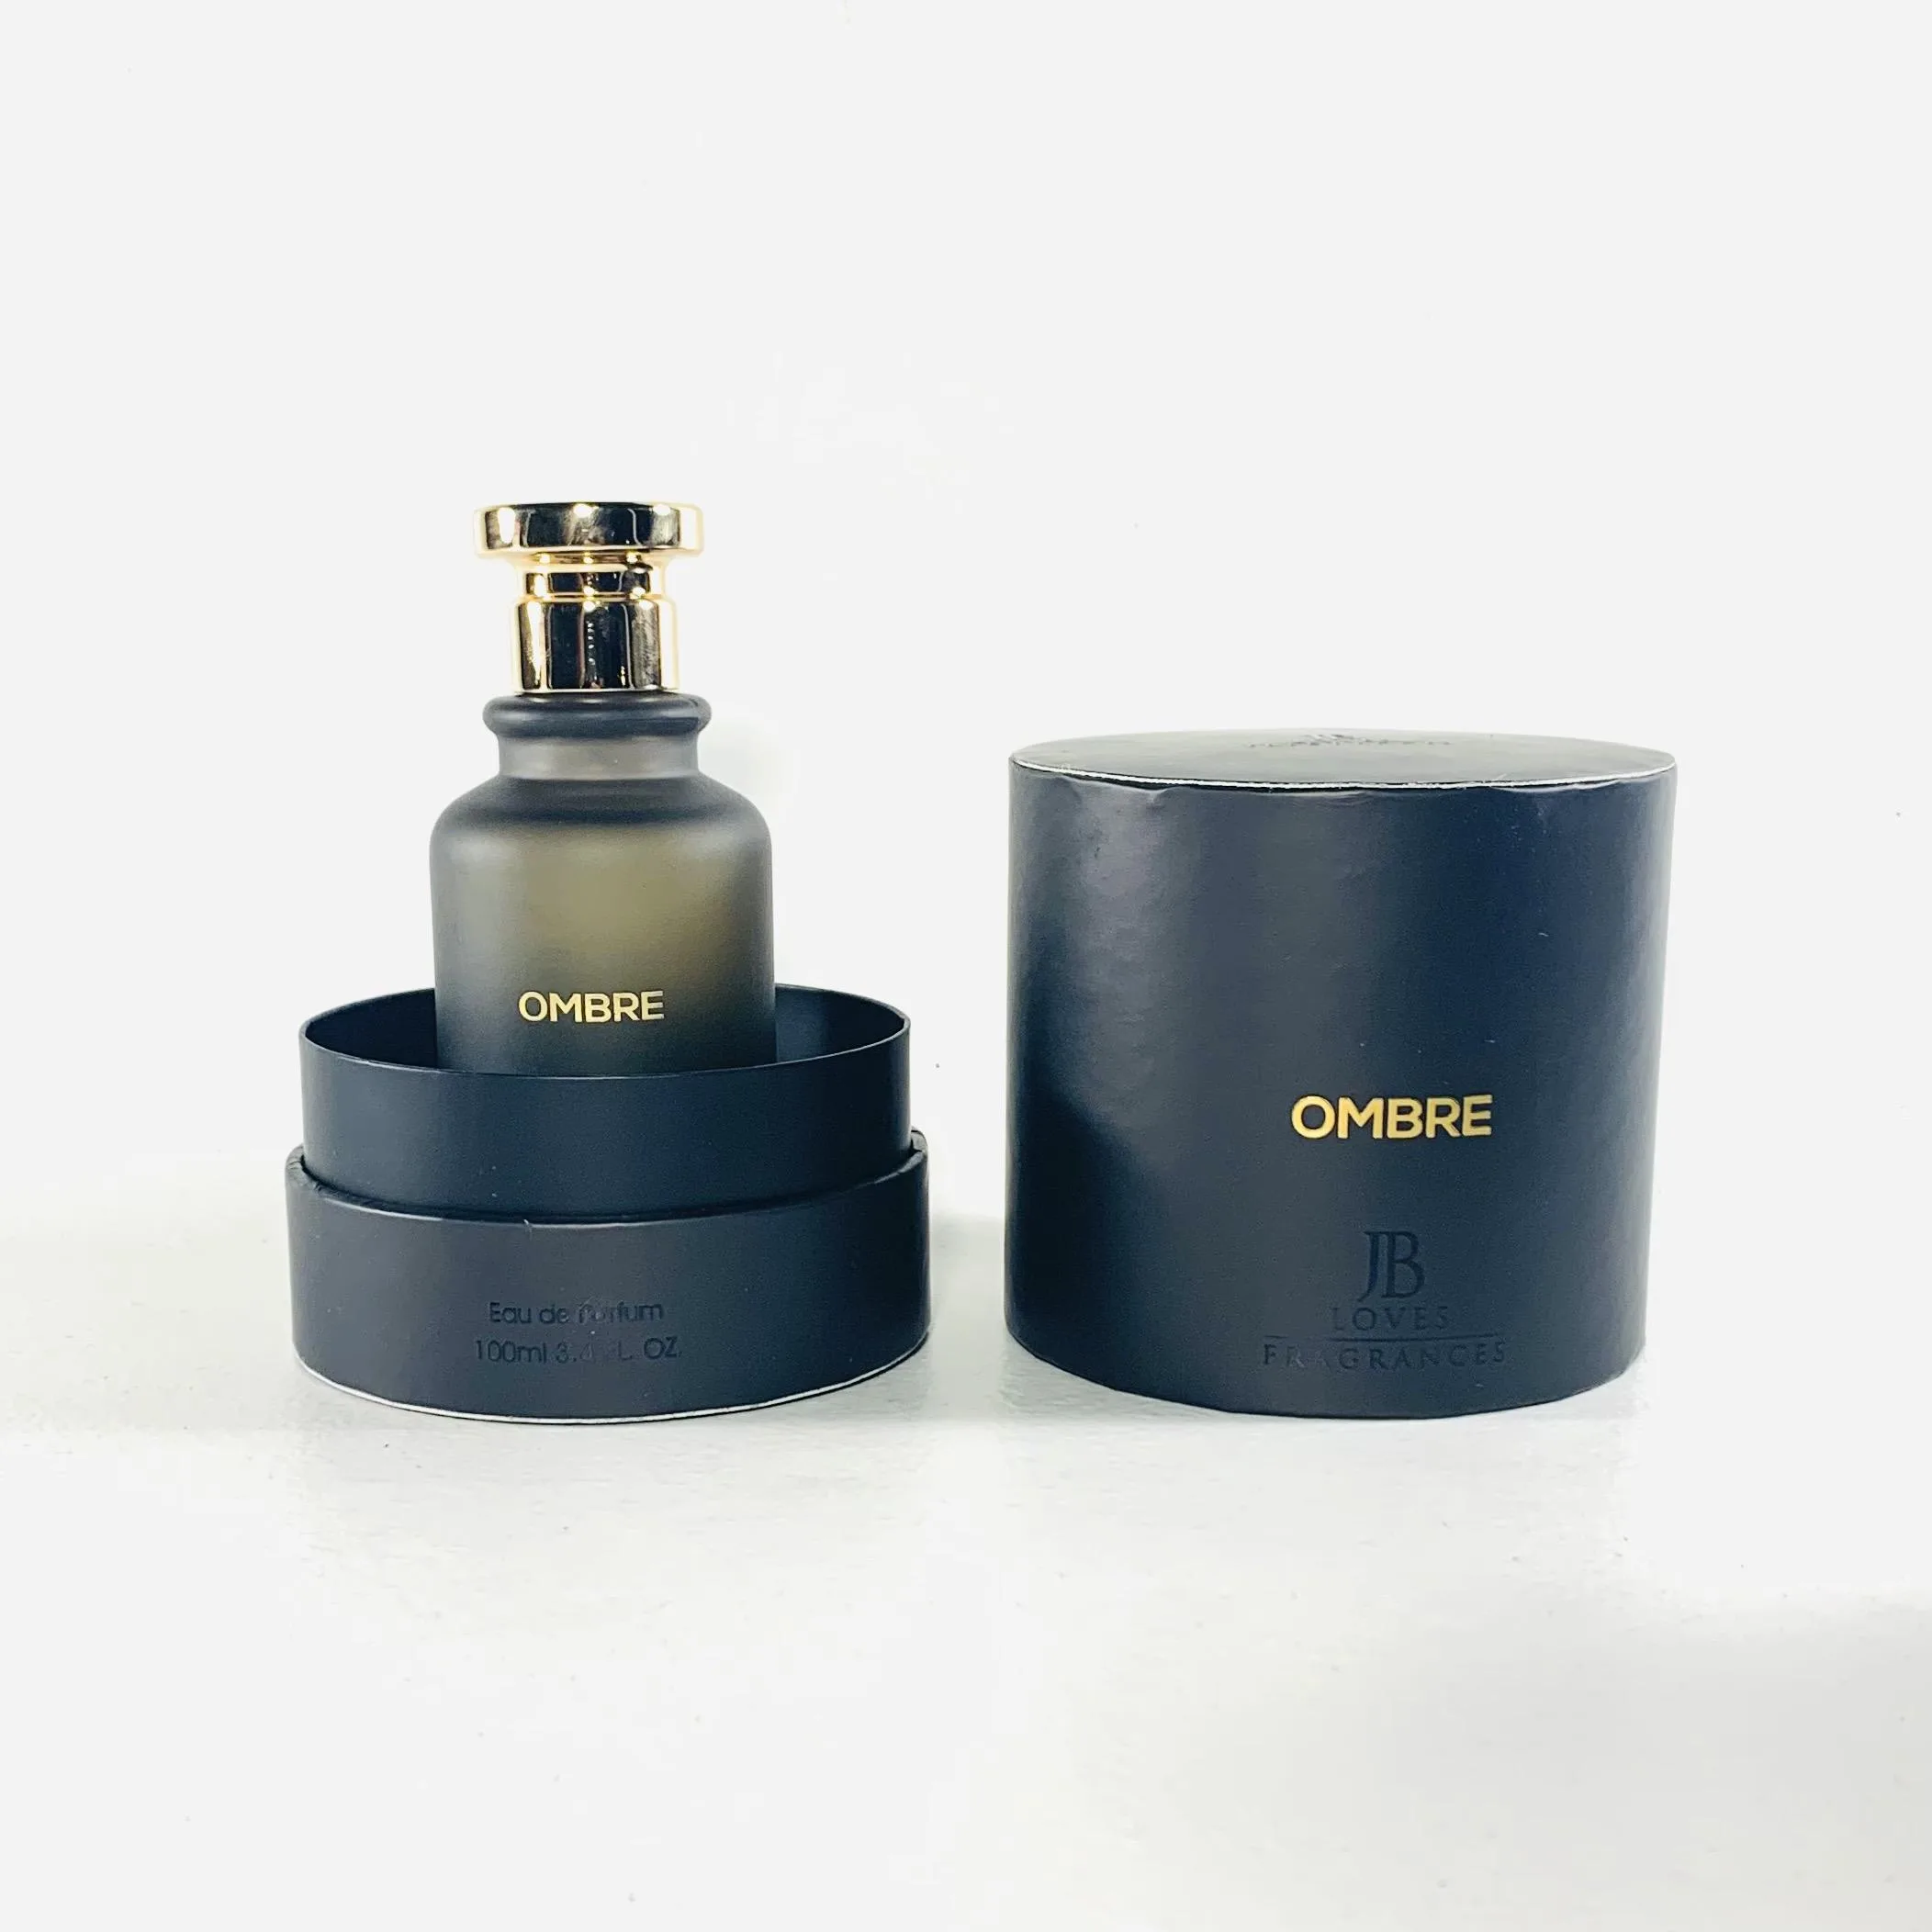 Ombre - Jb Fragrance - Eau de parfum 100ml